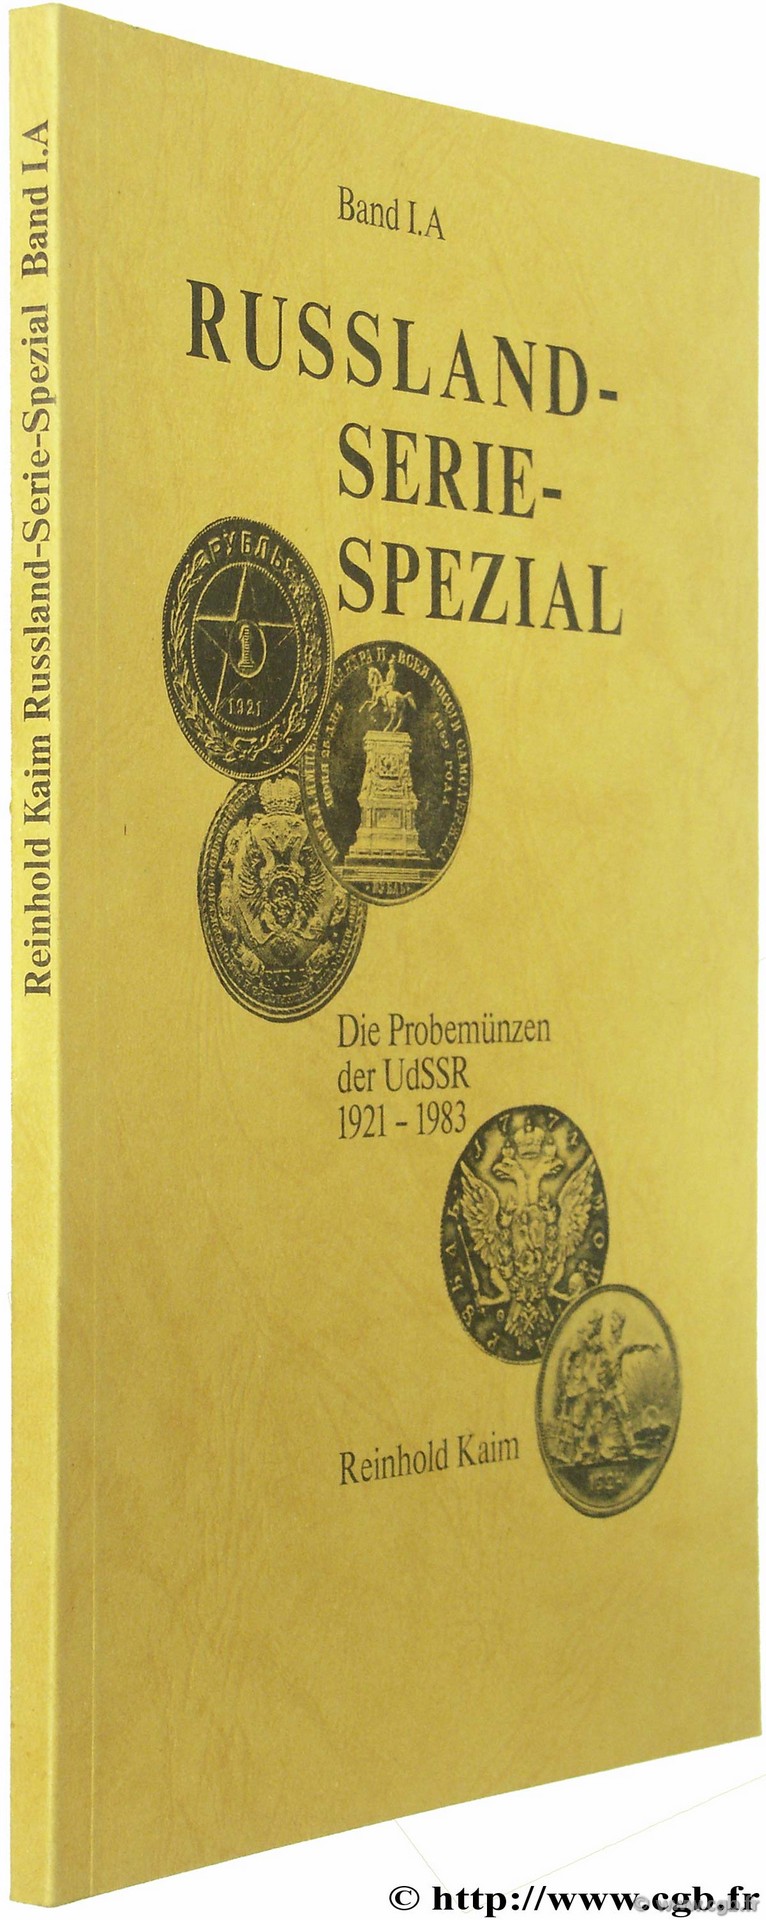 Russland- Serie - Spezial. Die Probemünzen der UdSRR (1921-1983) KAIM R.